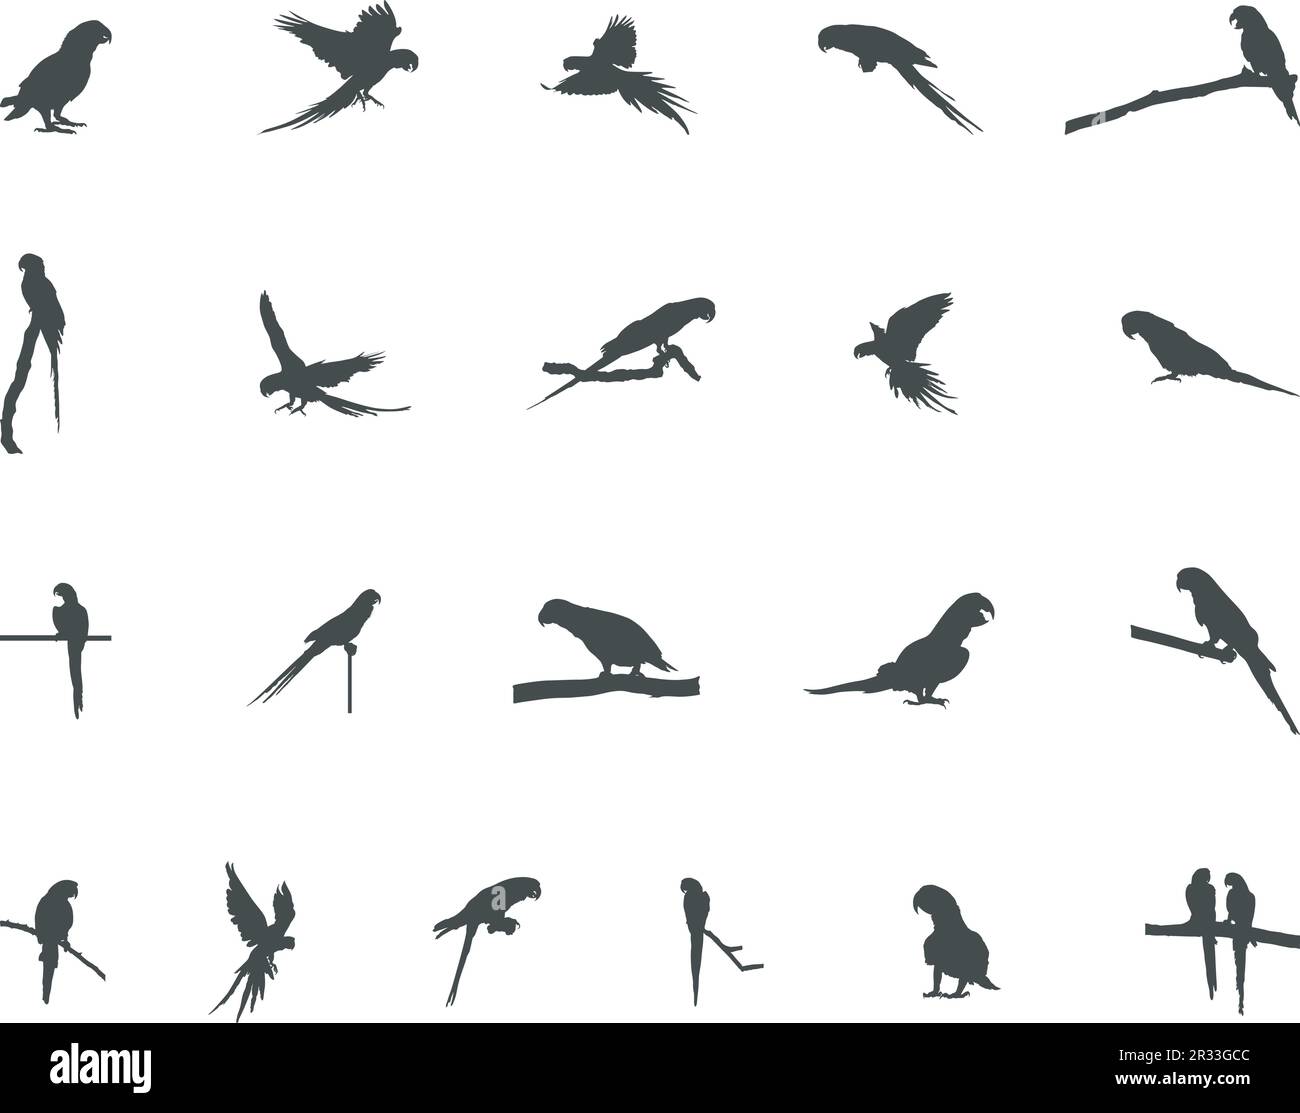 Parrots silhouette, Parrot vector, Birds silhouette,Parrot icon set. Stock Vector